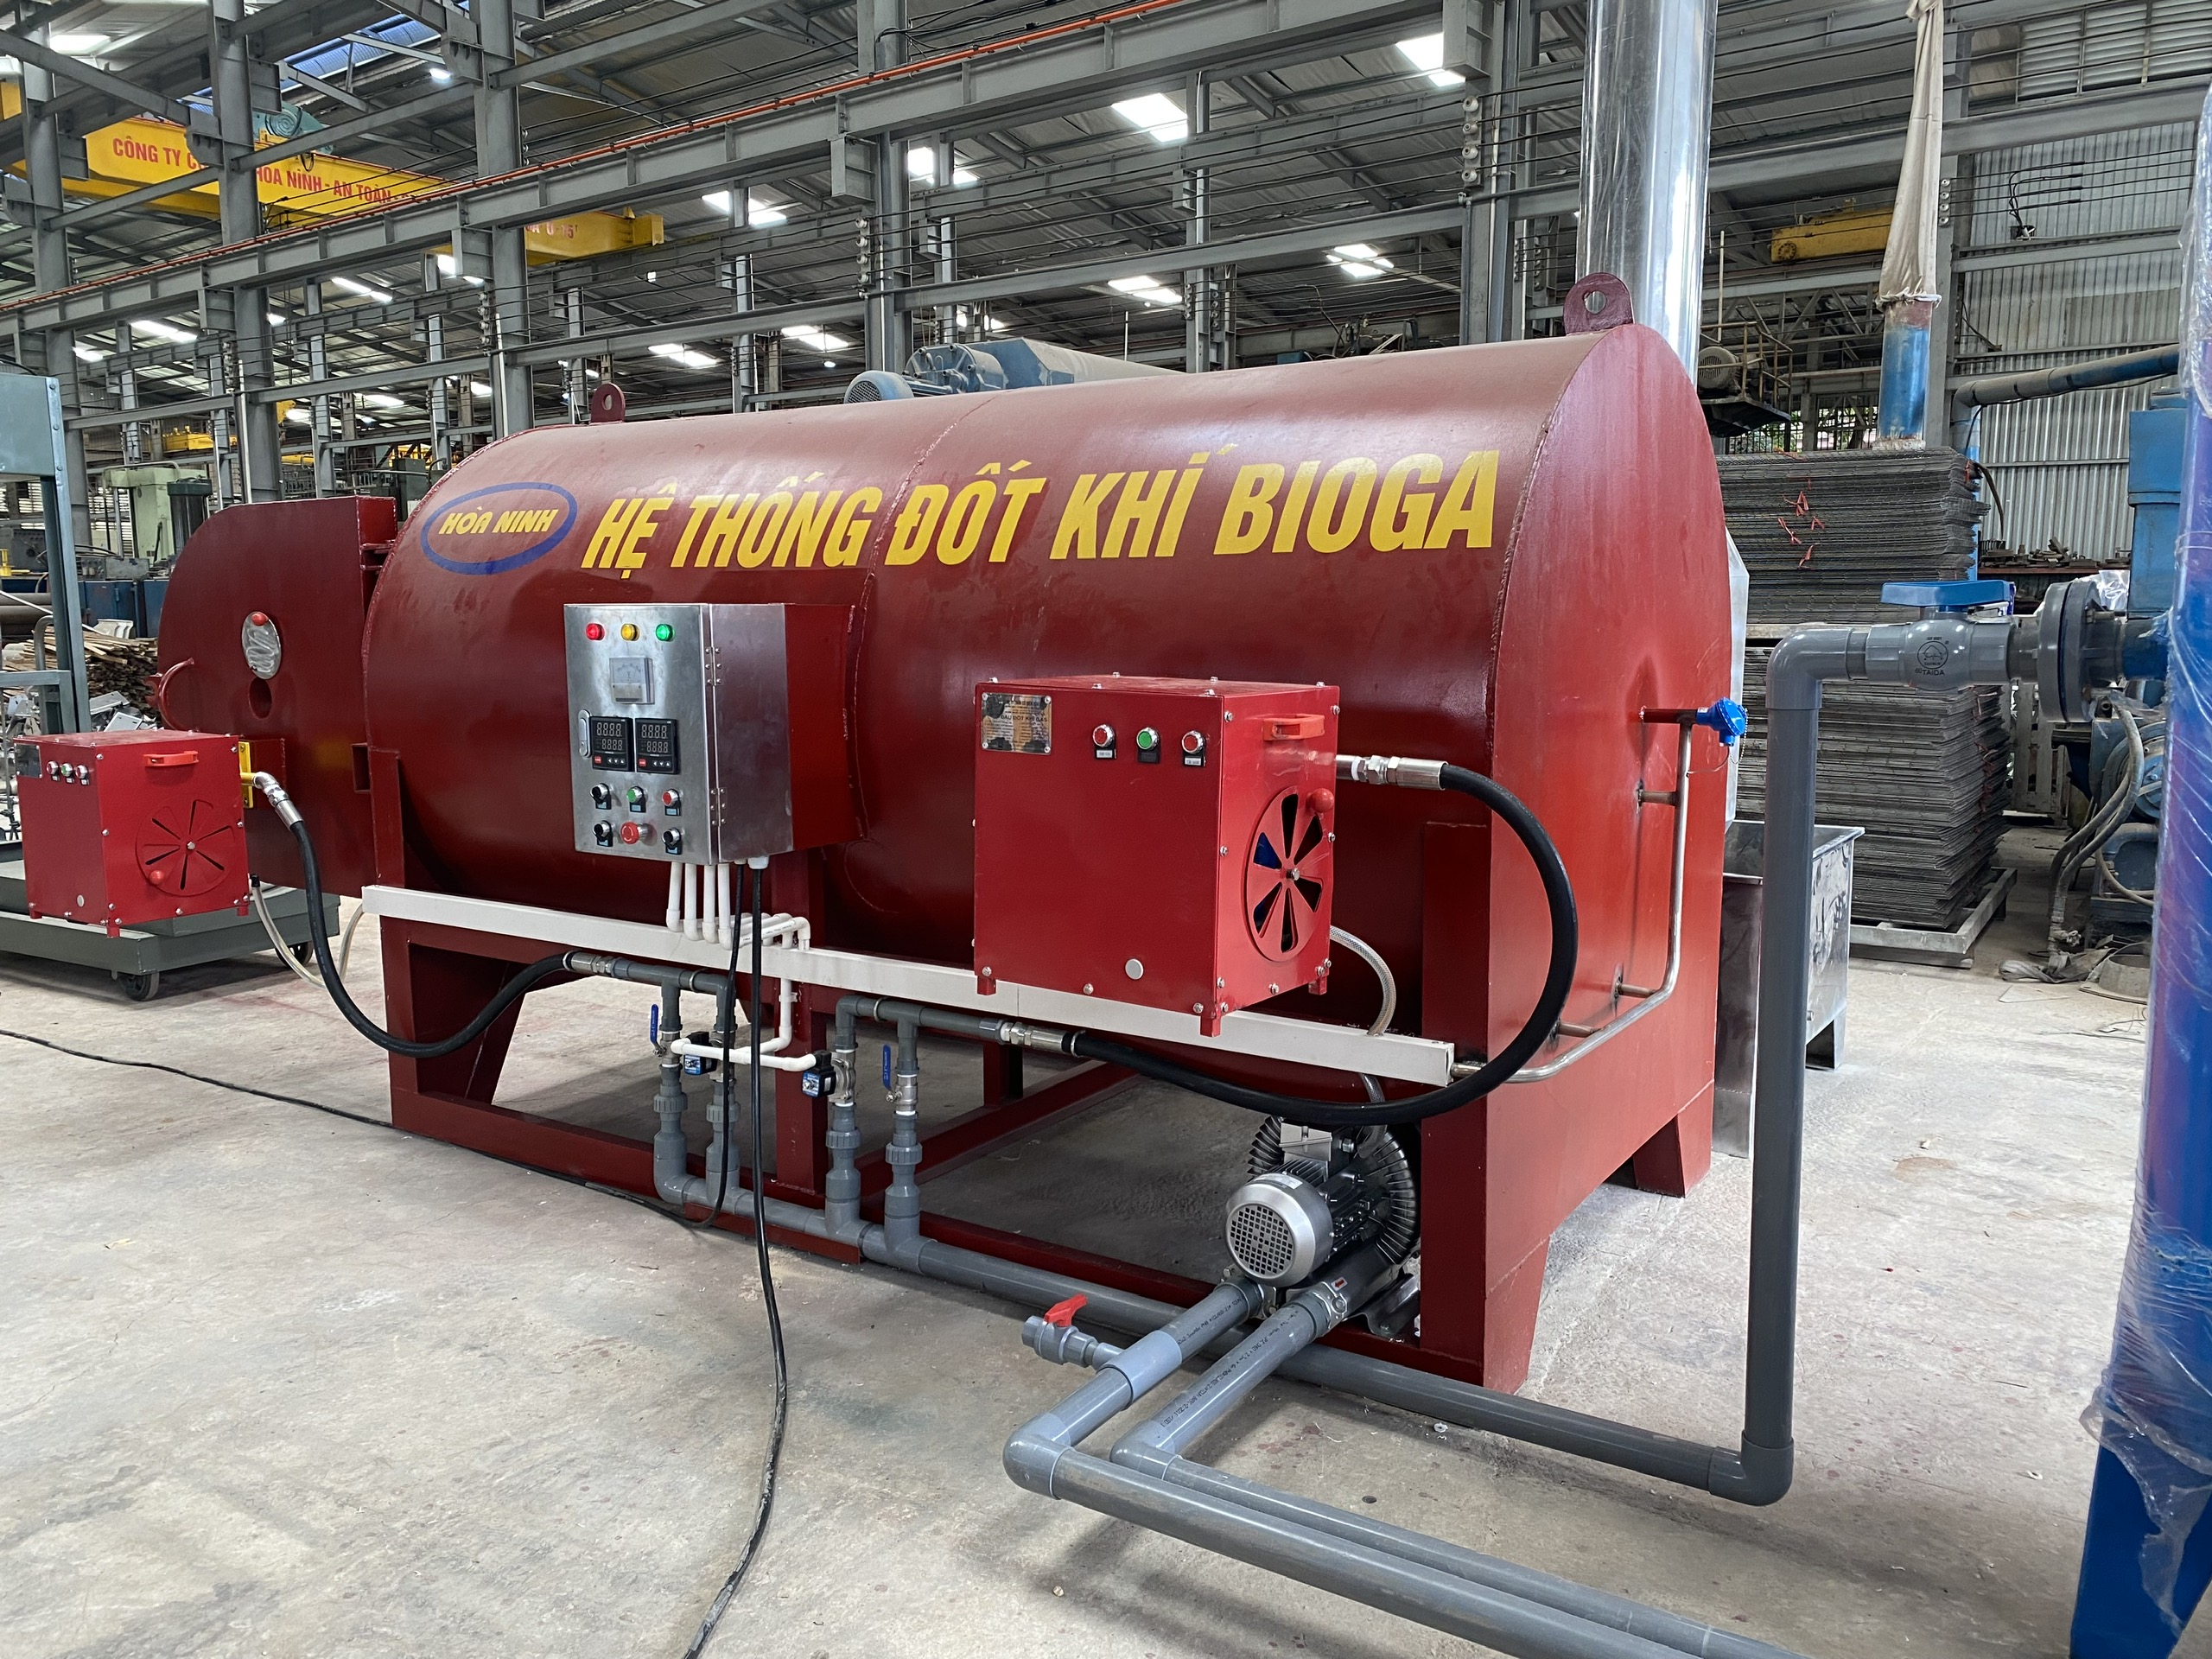 Hệ thống đốt khí Biogas - Thiết Bị Chăn Nuôi Hòa Ninh - Công Ty TNHH Cơ Điện Hòa Ninh